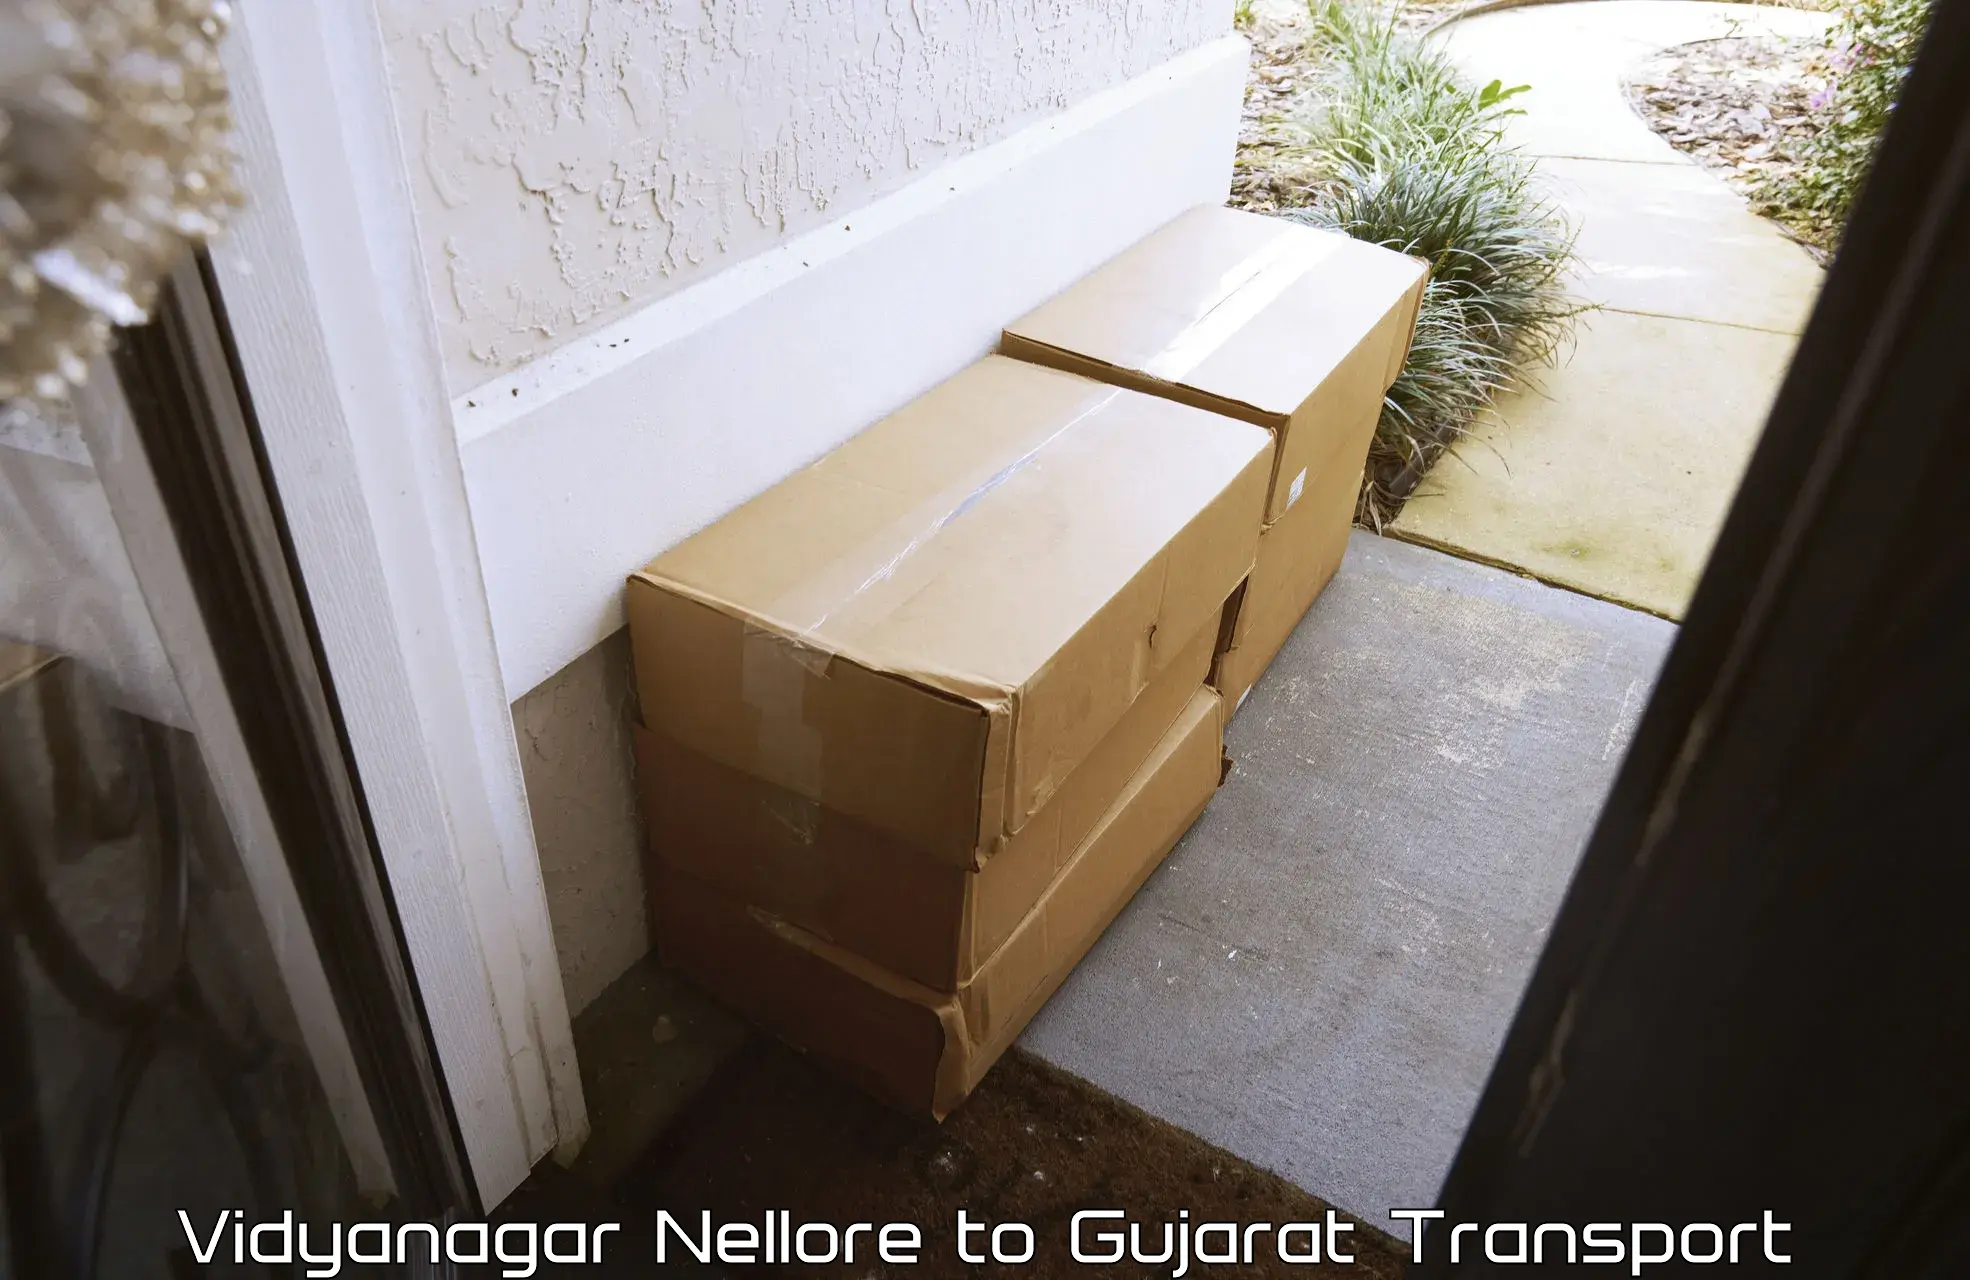 Luggage transport services Vidyanagar Nellore to Dwarka